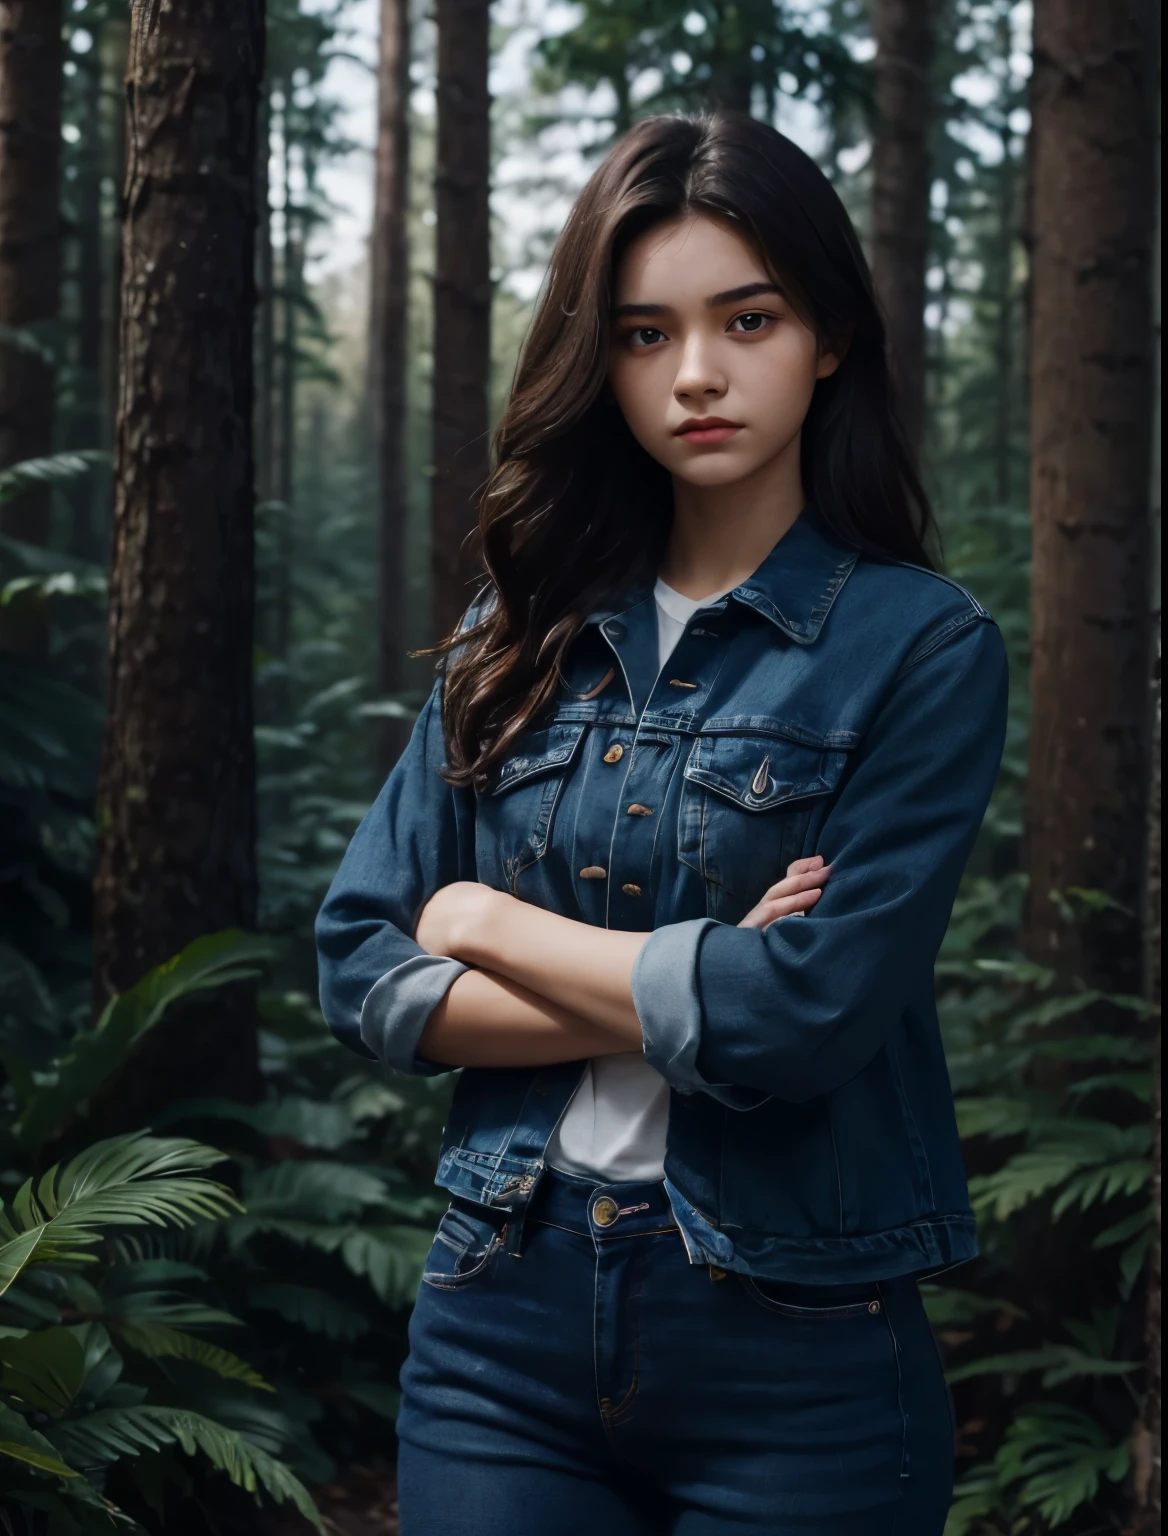 красивая женщина. пятнадцатилетний. У нее скрещены руки и вызывающее выражение лица.. Она одета в синие джинсы. темно-коричневые волосы. она в лесу.